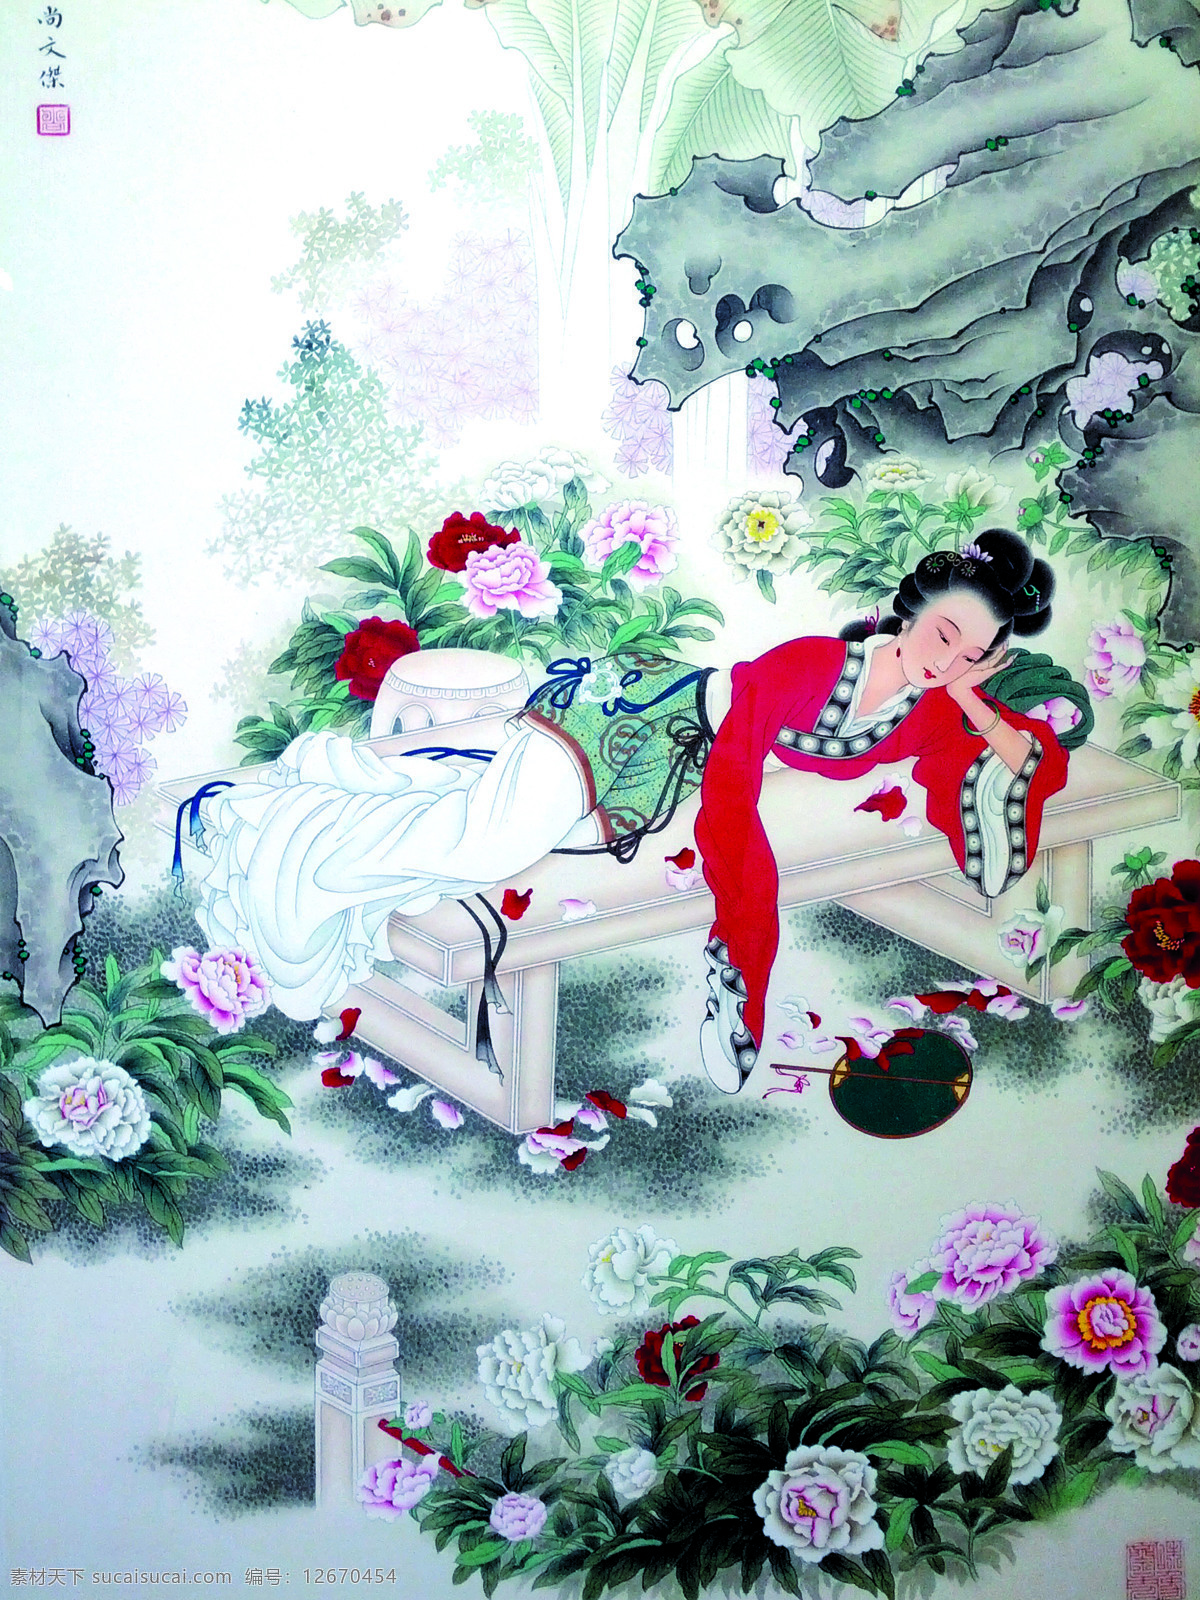 古代仕女图 美术 中国画 彩墨画 女人 仕女 丽人 花园 花朵 文化艺术 绘画书法